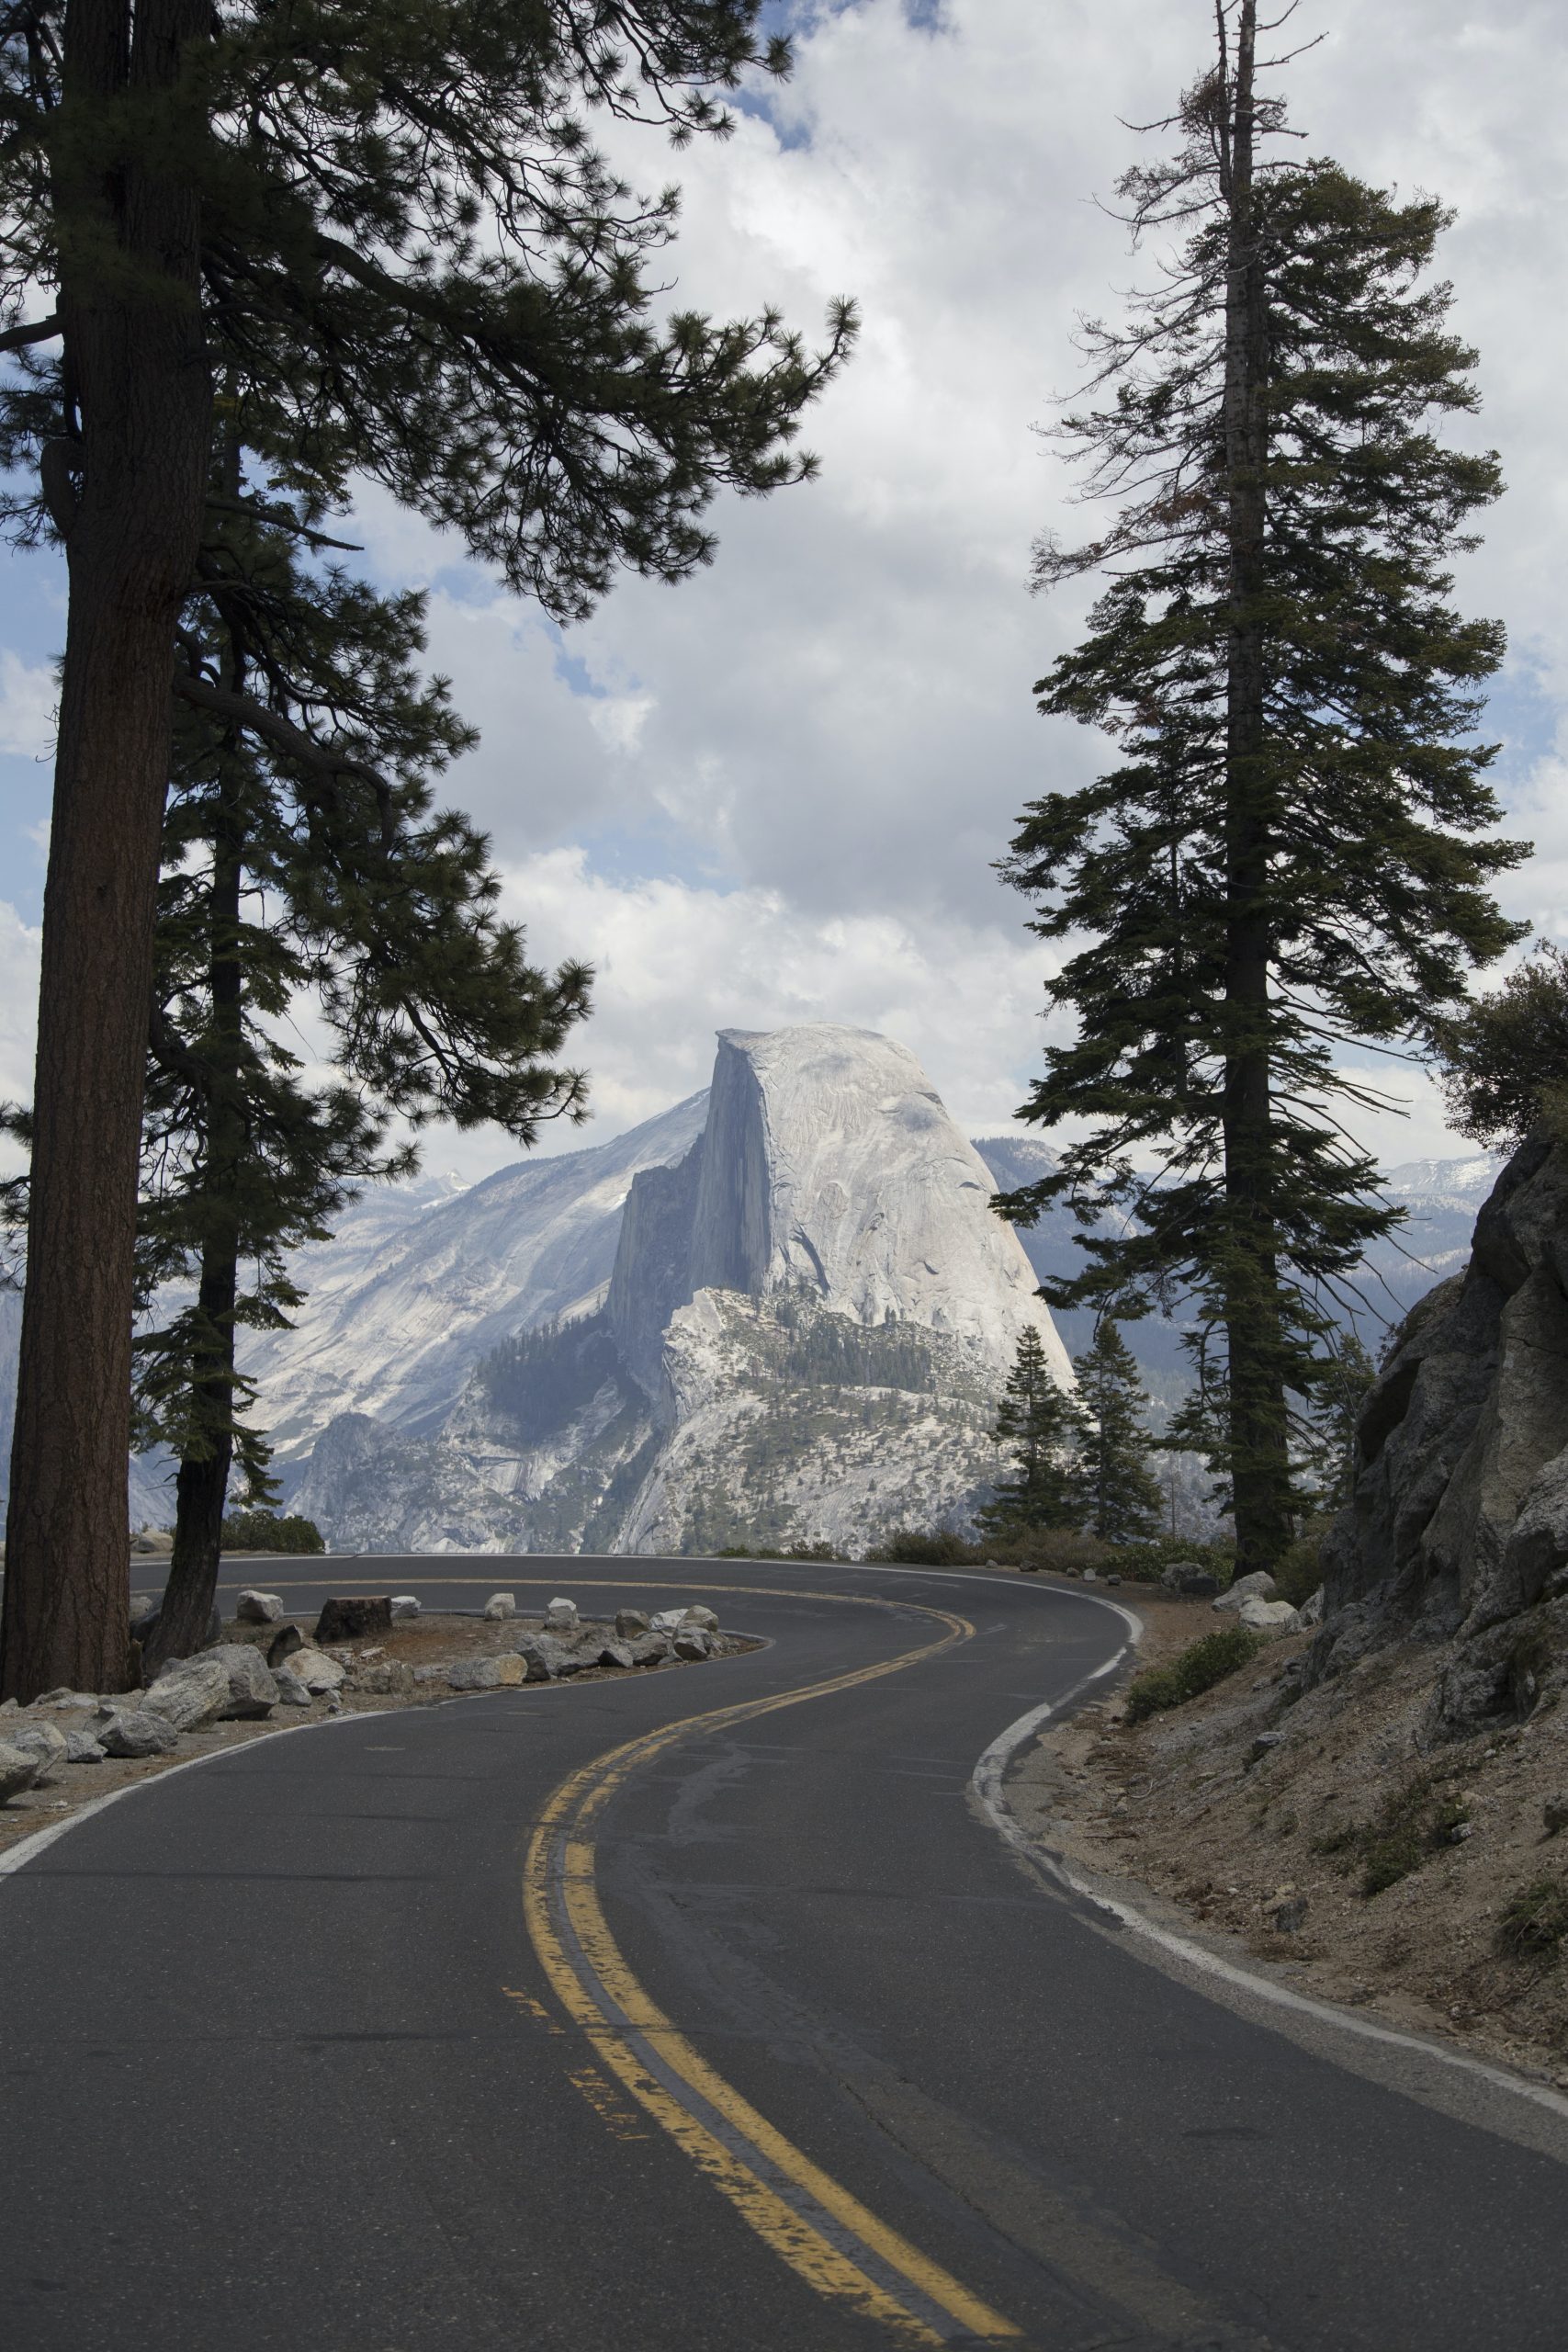 Yosemite Day Trip: Nature’s Majesty Awaits